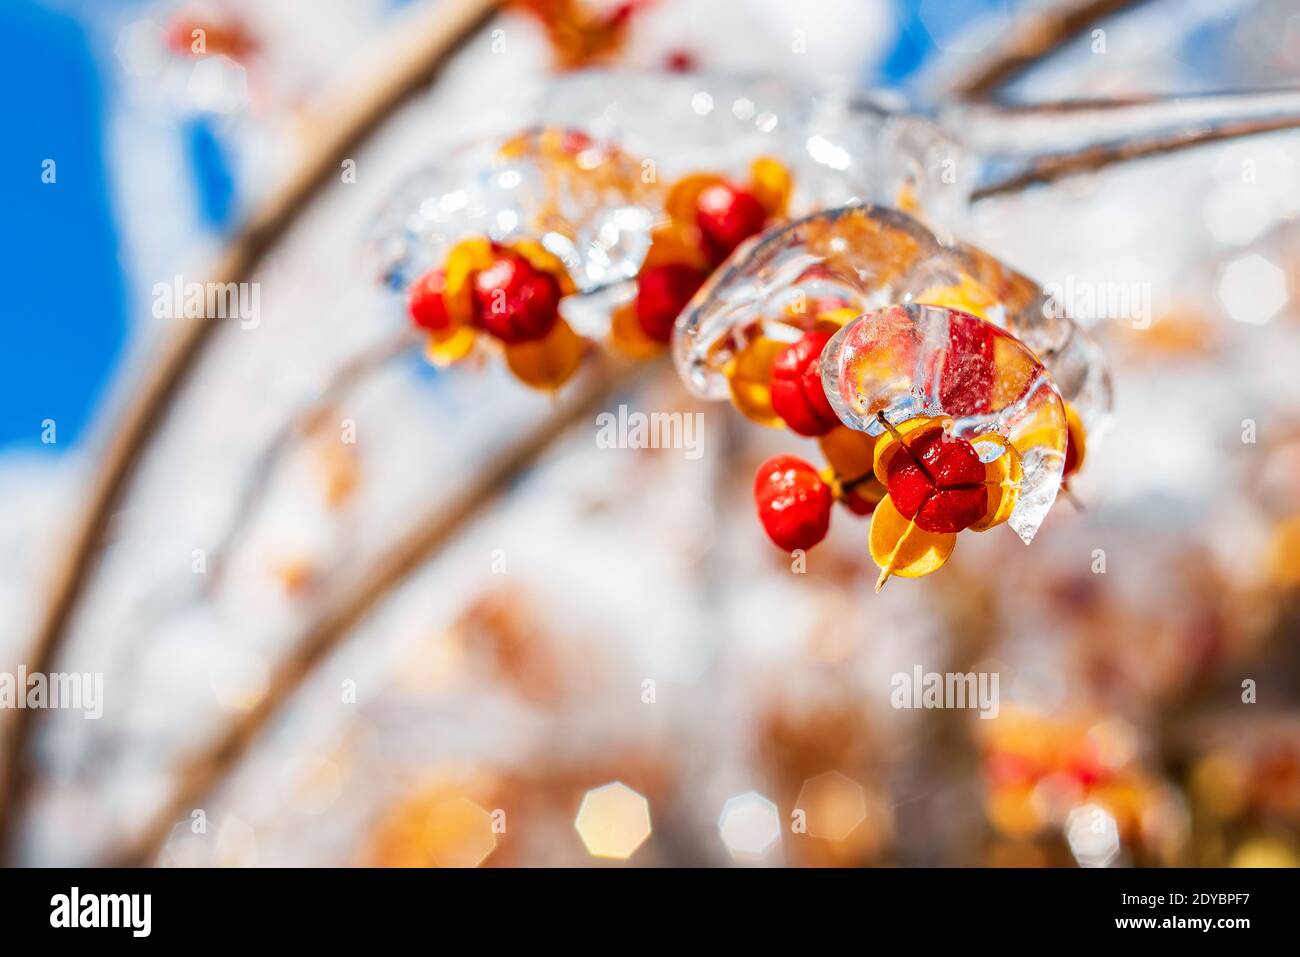 Äste mit roten orangefarbenen Beeren, bedeckt mit glitzerndem Eis und Schnee, leuchten in der Sonne. Winter frostigen Schnee Wetter. Natürlicher festlicher Hintergrund. Stockfoto